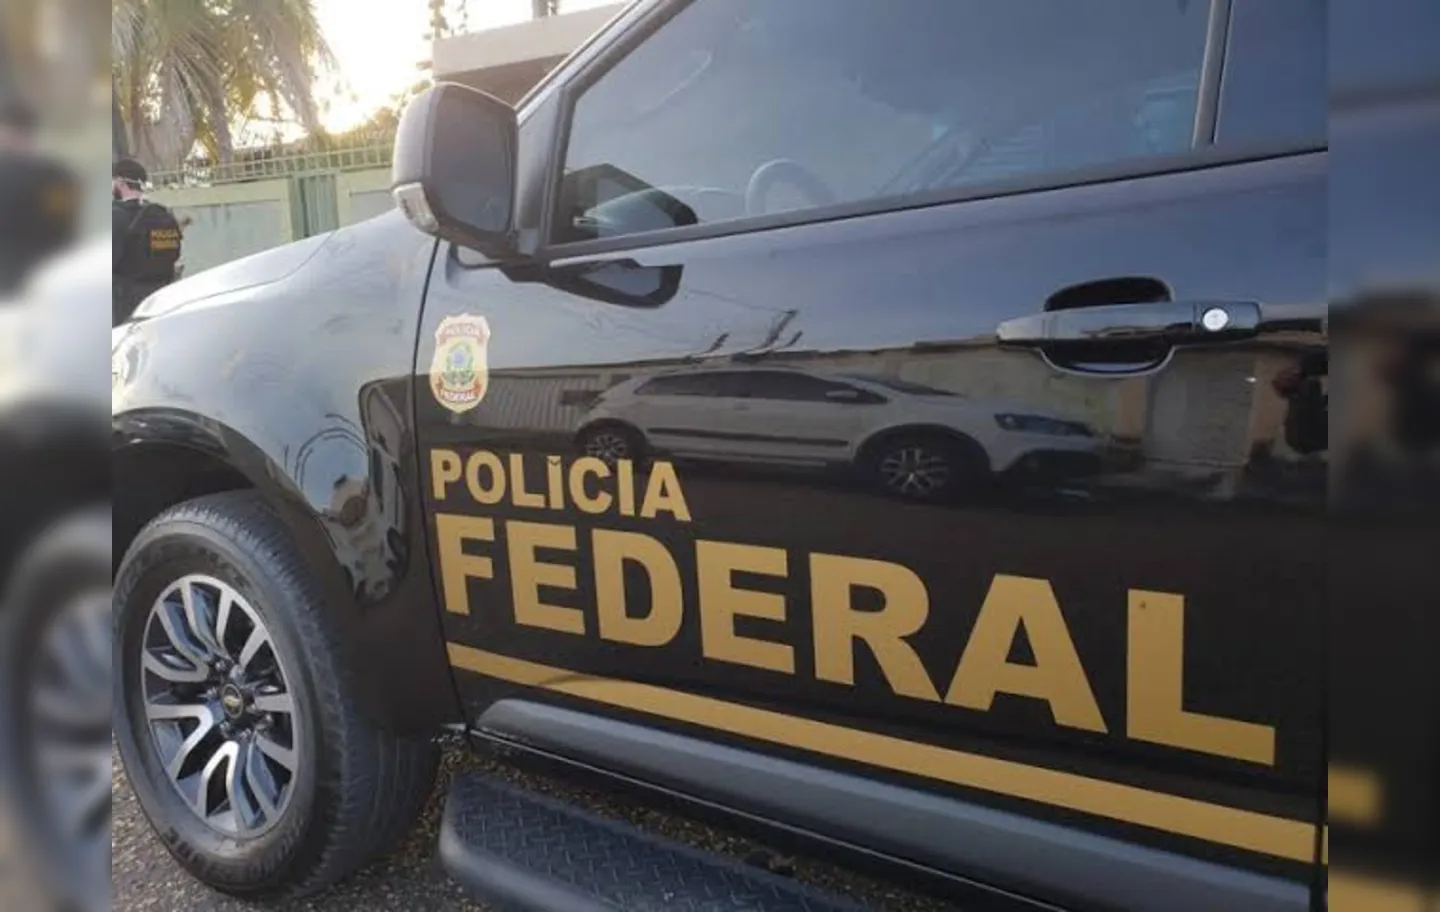 Parlamentar afirma ainda que funcionários estão há *quatro meses" sem receber na área de saúde da Prefeitura de Feira de Santana